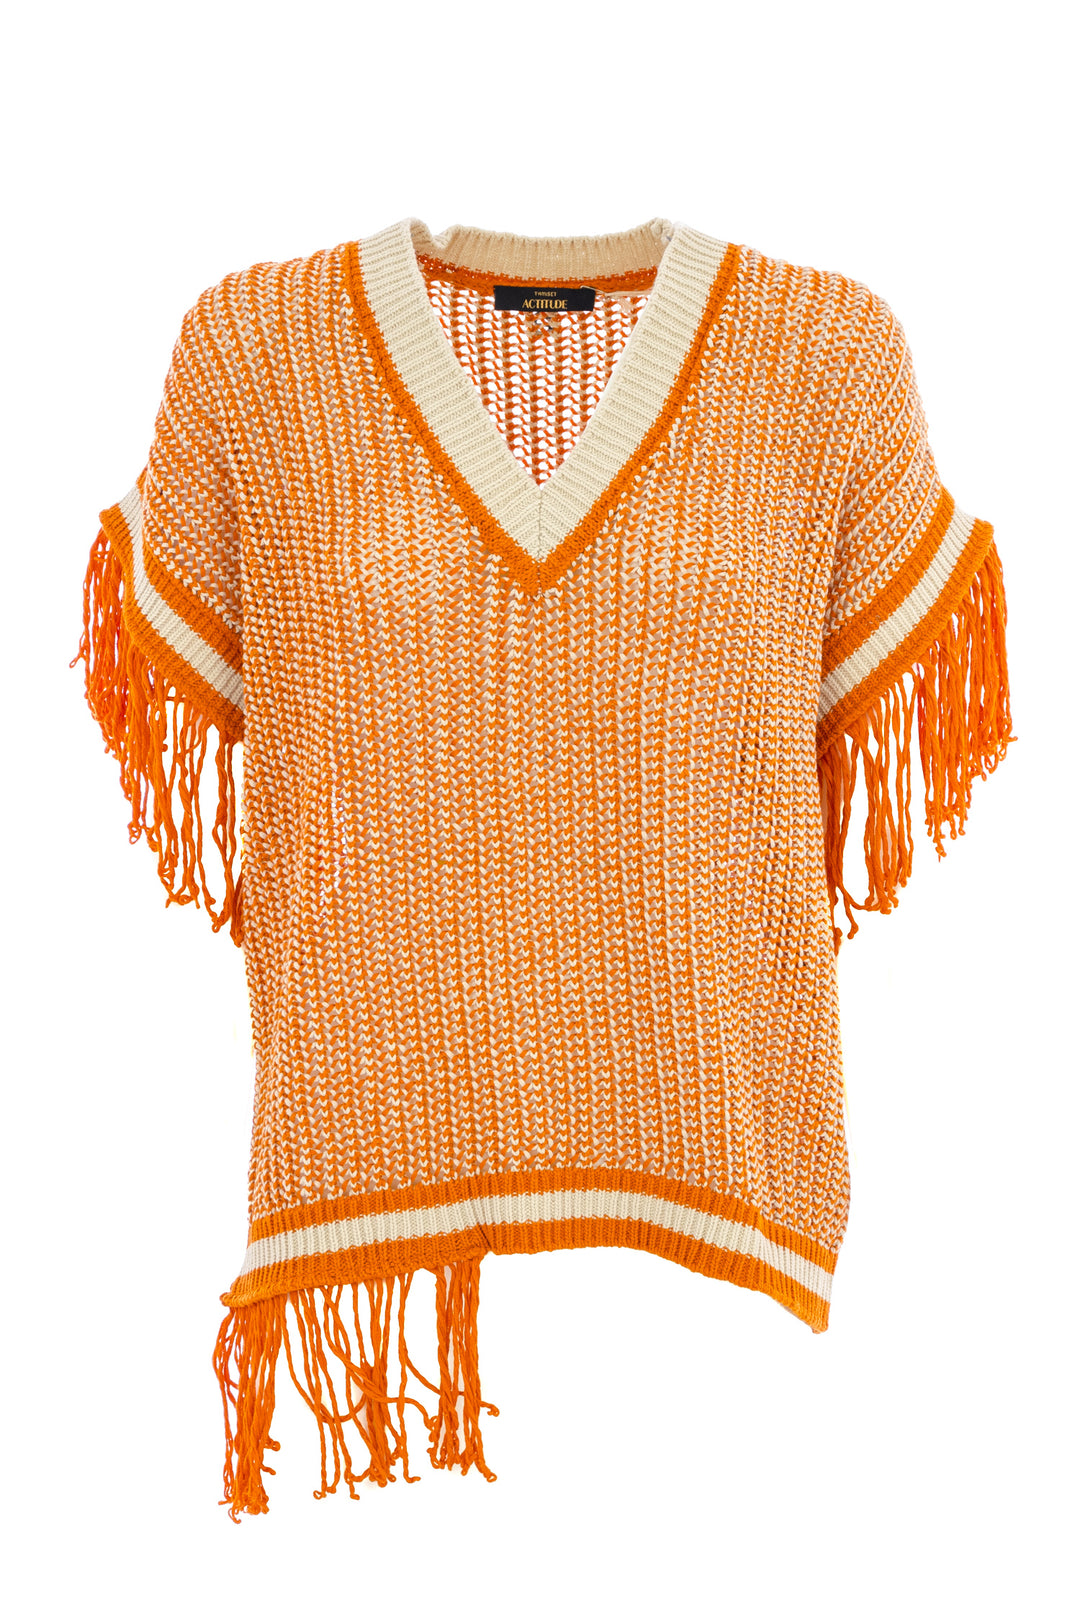 ACTITUDE TWINSET Maglia over arancio in crochet con frange asimmetriche - Mancinelli 1954